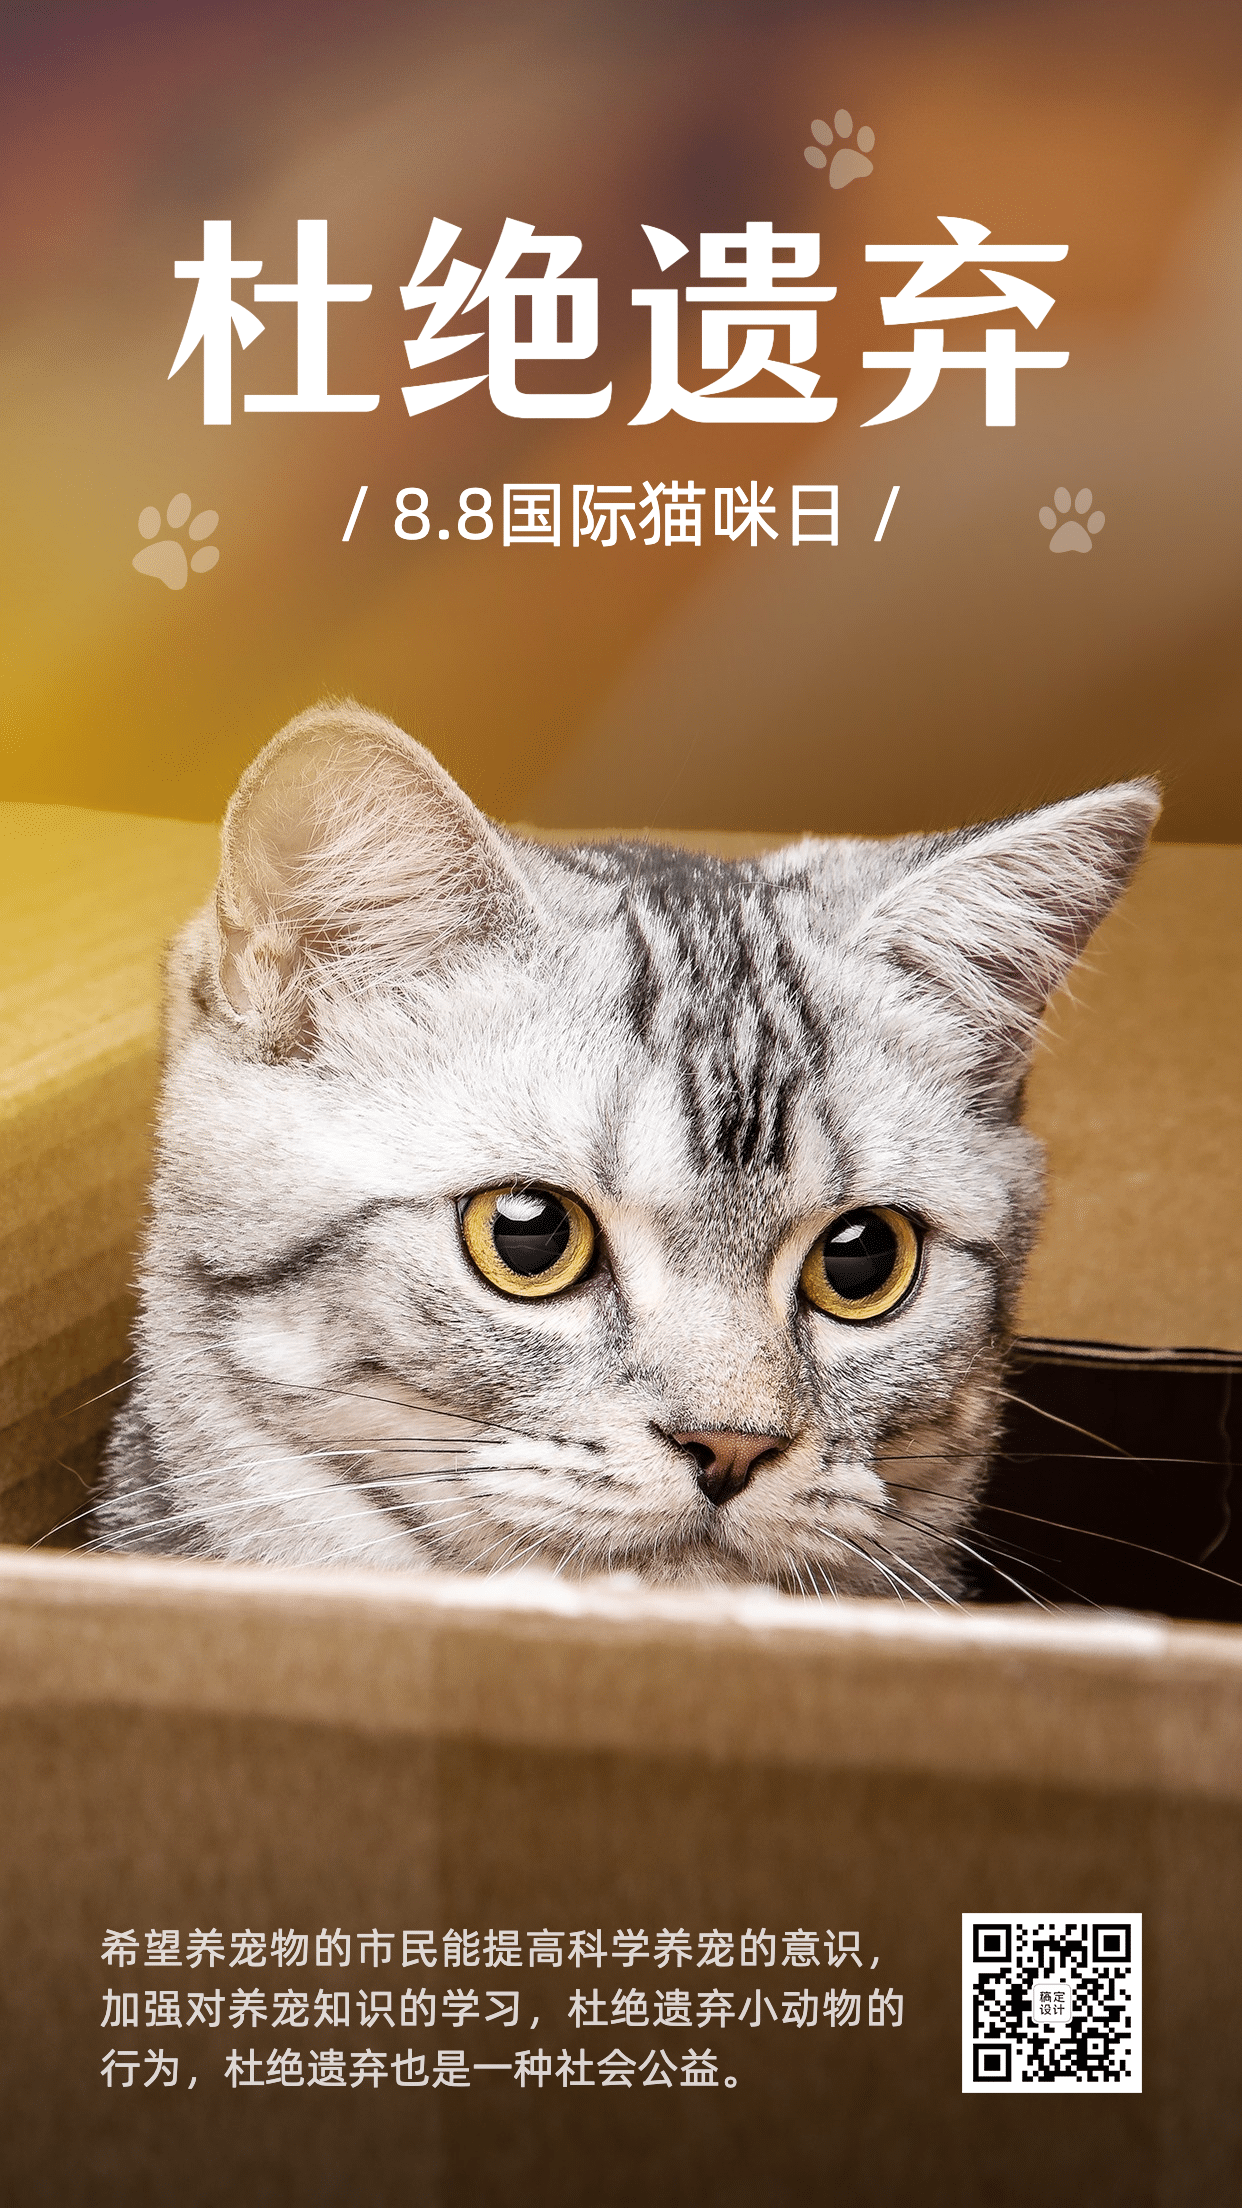 国际猫咪日关爱动物公益宣传可爱实景手机海报预览效果